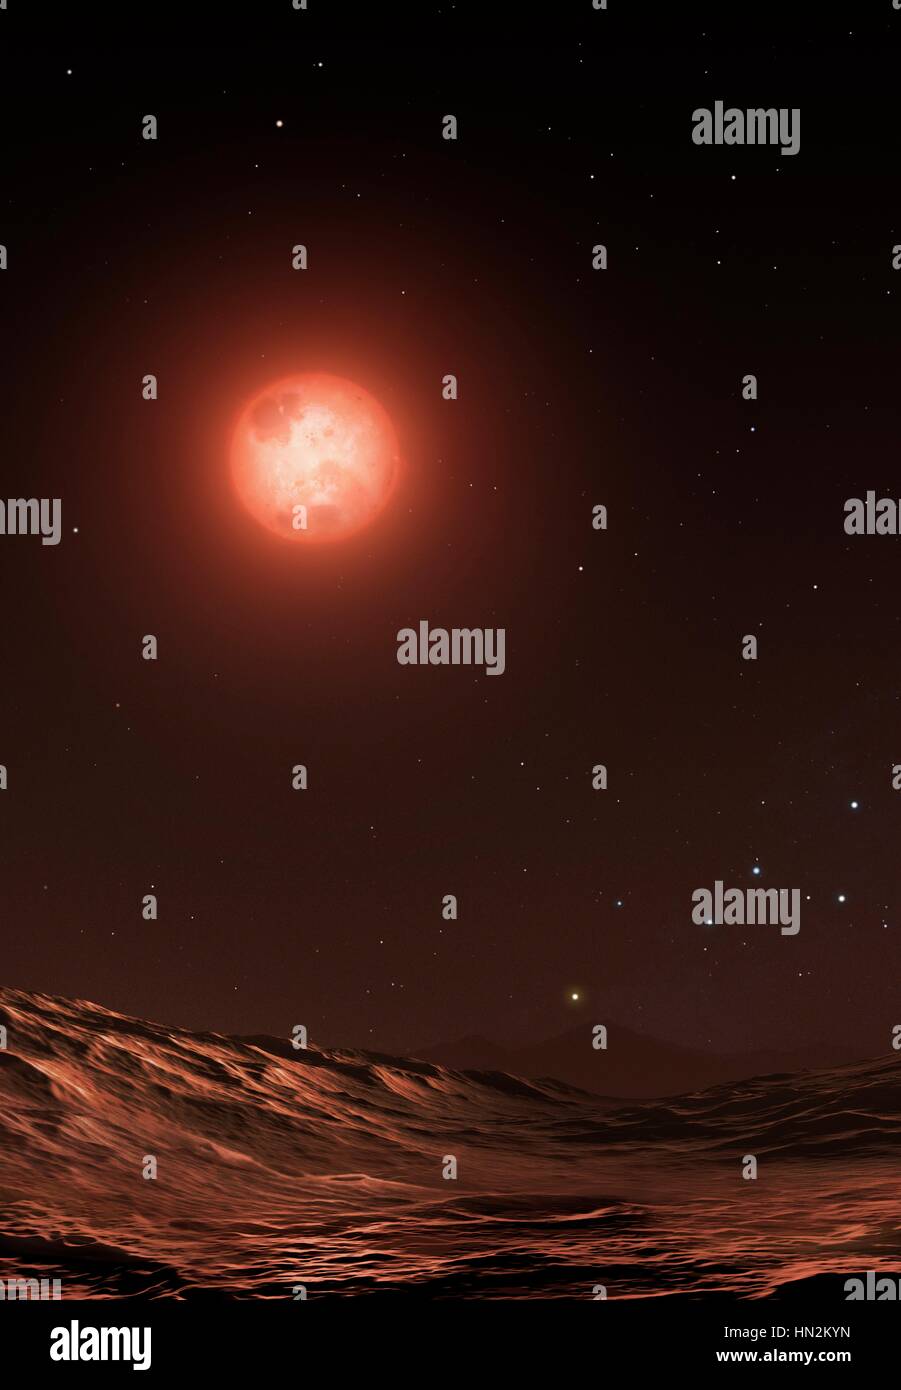 Proxima è la stella più vicina al Sole è una dim red dwarf, minore il nostro sole e molte migliaia di volte più luminose. Qui possiamo vedere è visto con un orbita pianeta roccioso, scoperto di recente, chiamato Proxima b. In fondo, appena sopra l'orizzonte è una stella gialla. Questo è il sole visto da Proxima, il nostro sole è solo un'altra stella e un membro supplementare della costellazione Cassiopeia, il cui caratteristico profilo a W è visibile in basso a destra. Foto Stock